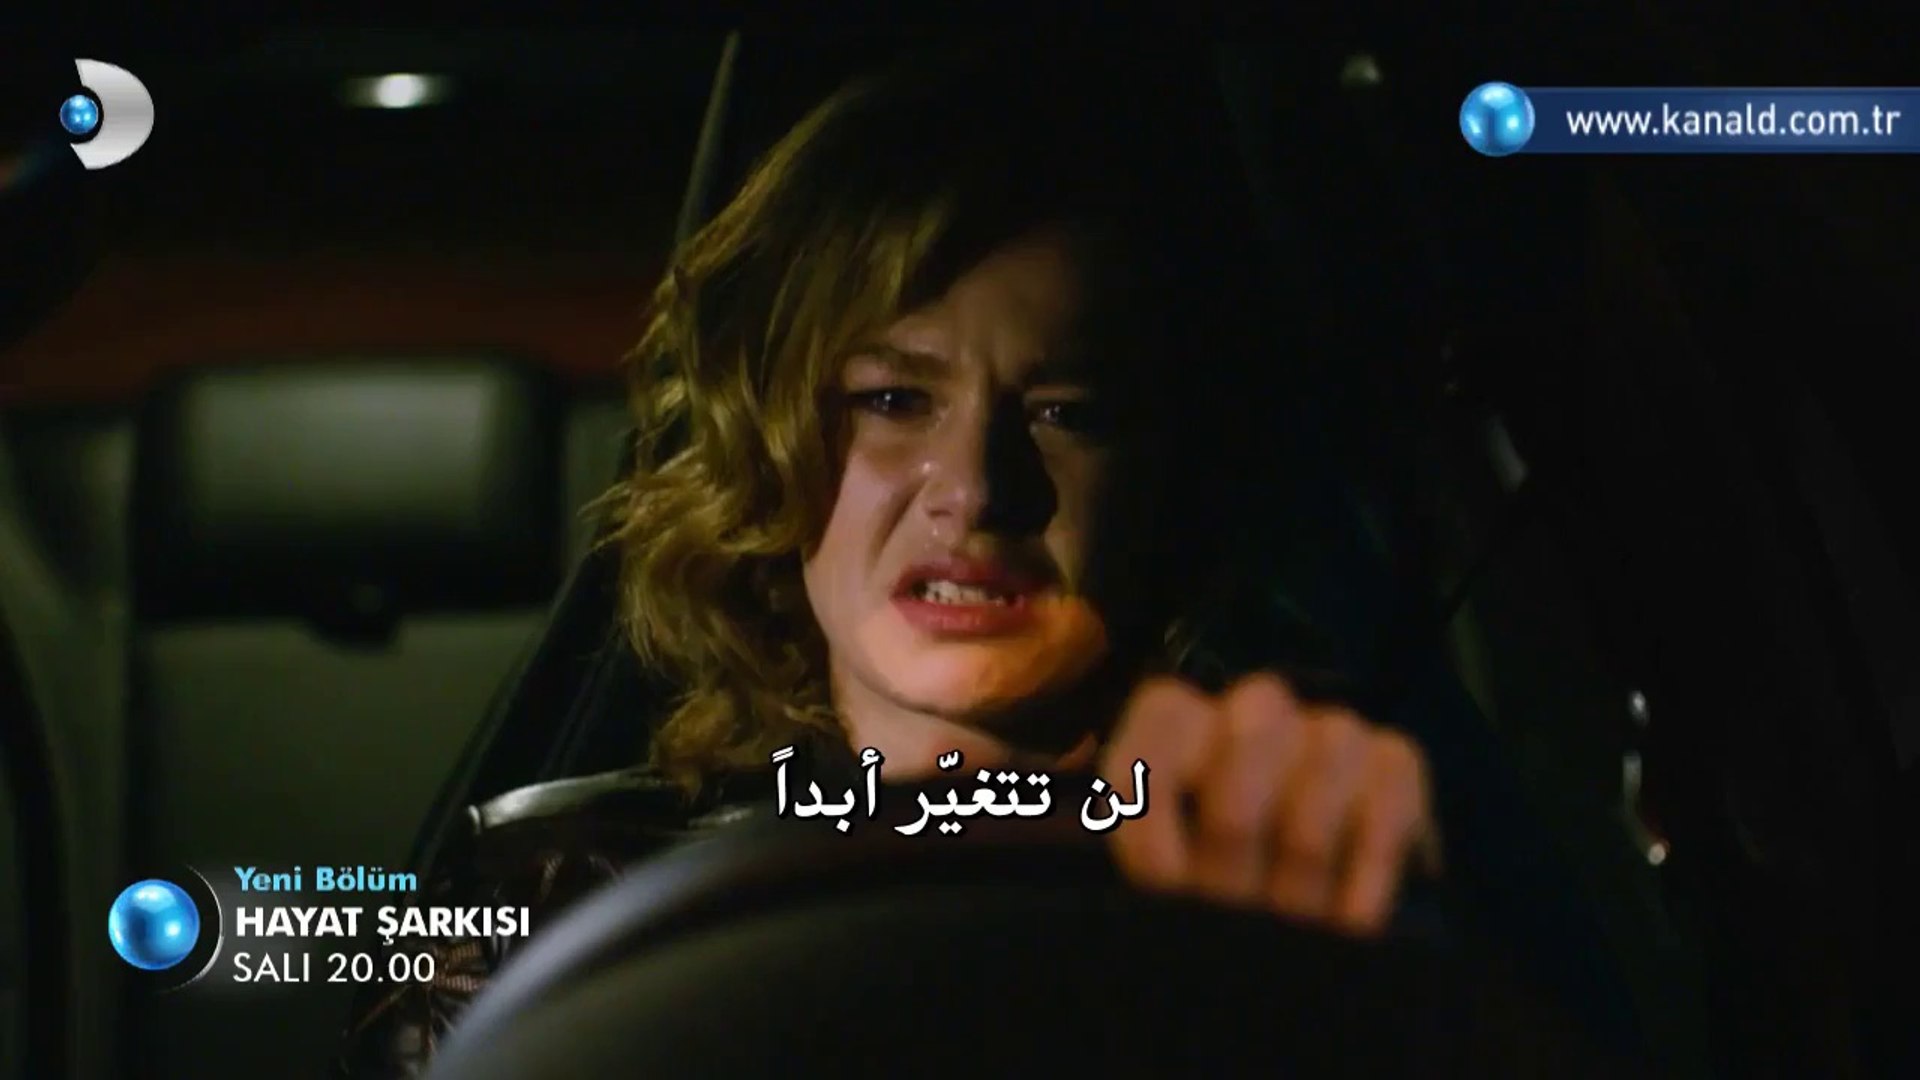 مسلسل أغنية الحياة Hayat Sarkisi الحلقة 16 مترجم للعربية Video Dailymotion